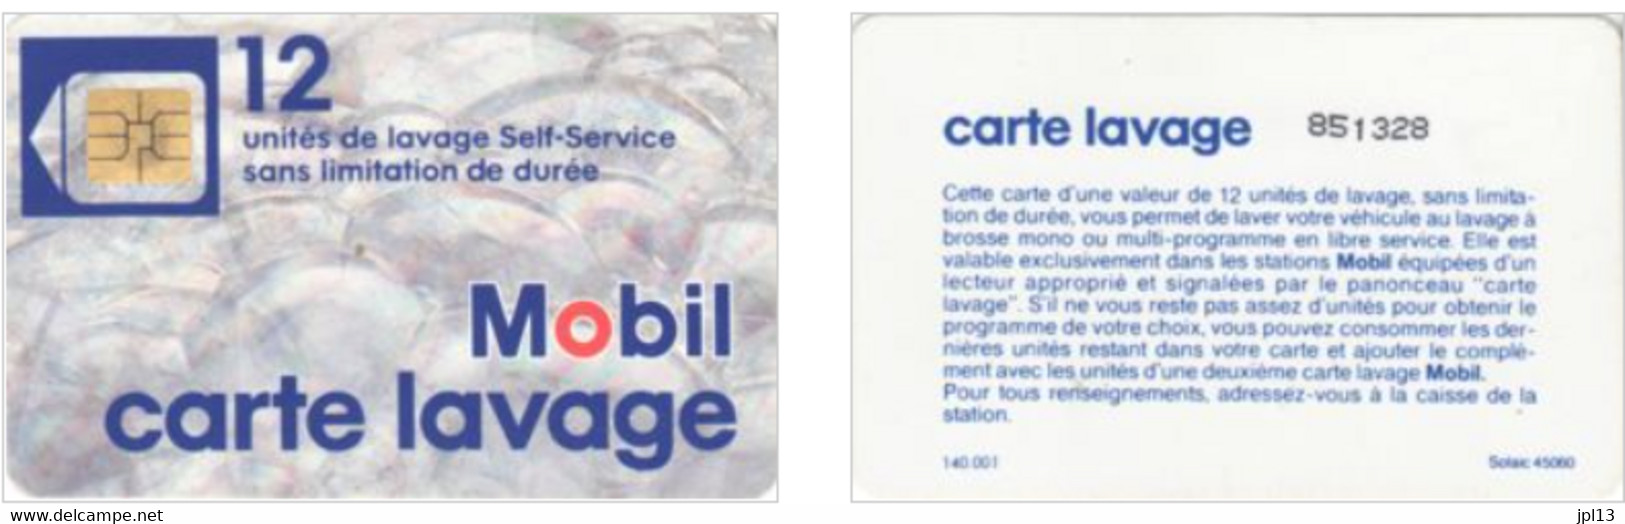 Carte Lavage - France - Mobil - 12 Unités De Lavage - Photo 2 - Car Wash Cards